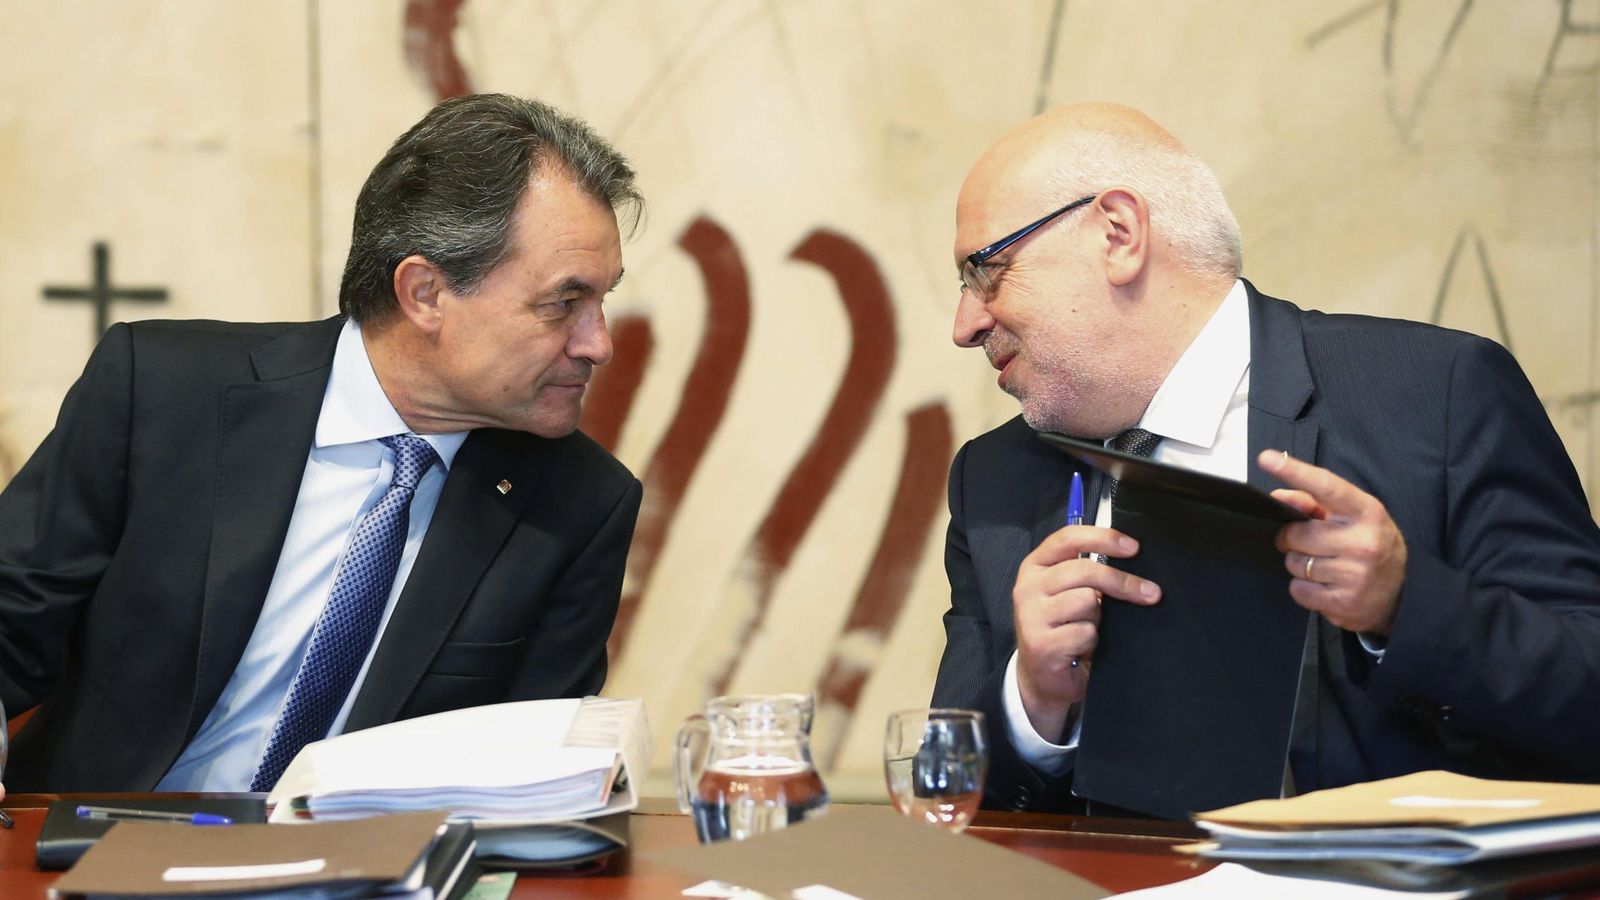 Foto: El expresidente de Cataluña Artur Mas conversa con Jordi Baiget en una imagen de archivo. (EFE)